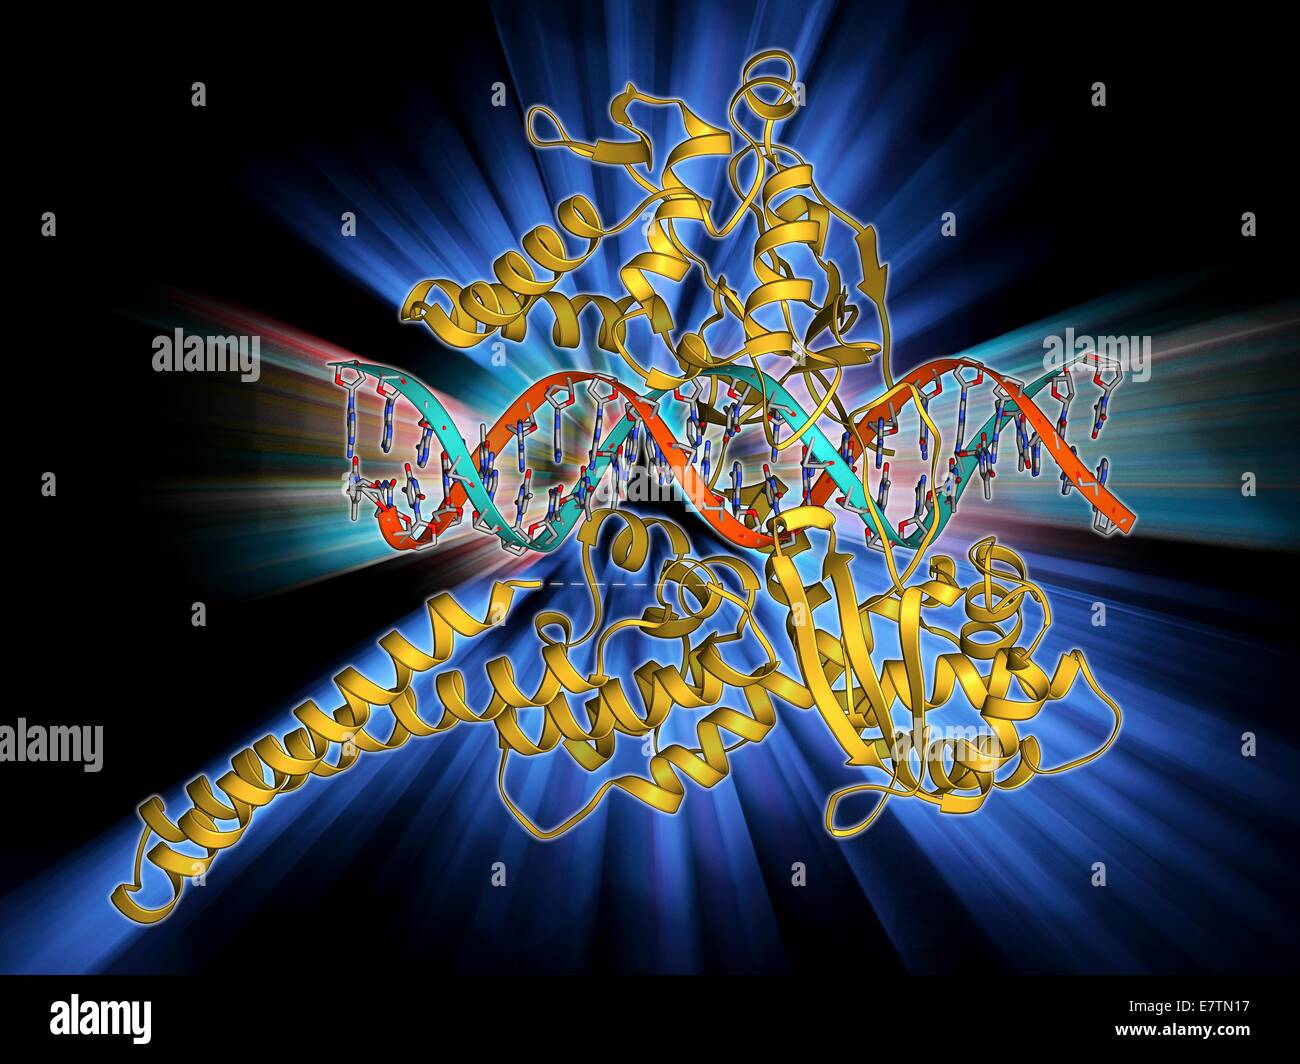 Typ-I-Topoisomerase an DNA gebunden. Molekülmodell zeigt eine Art ich Topoisomerase-Molekül (Khaki) verpflichtet, einen Strang der DNA (Desoxyribonukleinsäure, rot und blau). Die Topoisomerase Enzyme bei der Kabellitzen DNA. DNA ist in der Regel in einem supercoiled fo gespeichert. Stockfoto